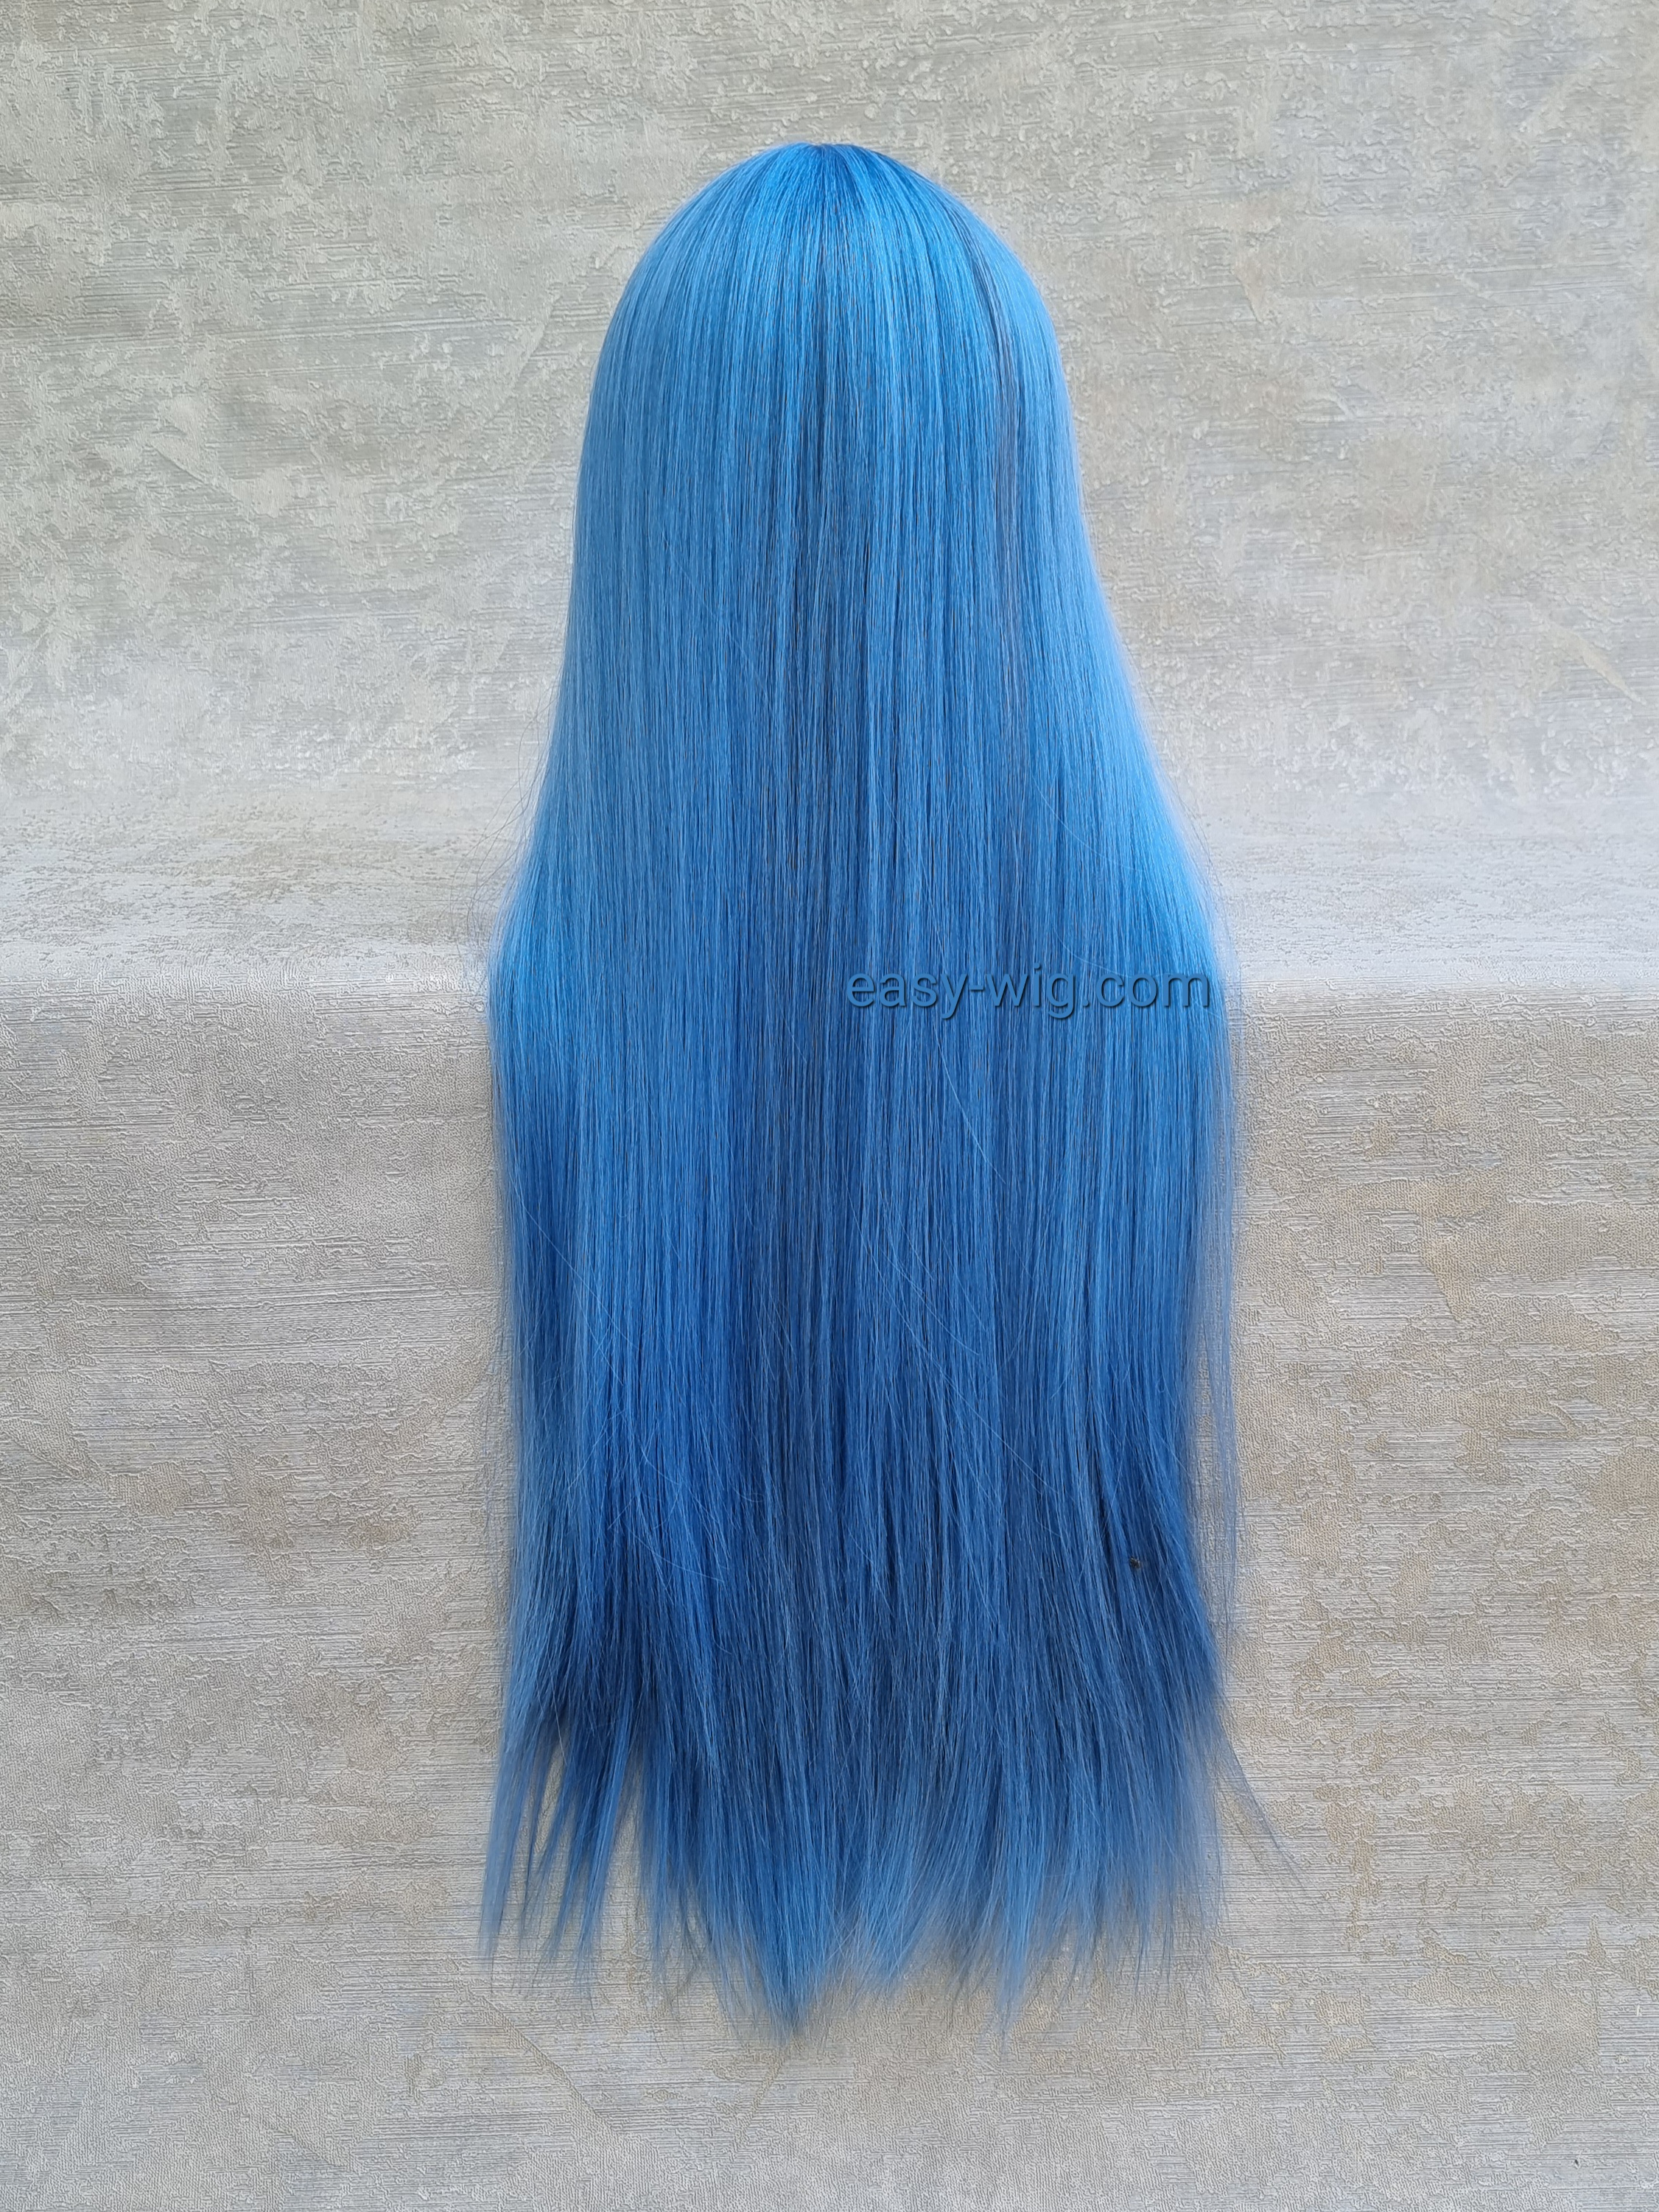 Термо парик голубой длинный с прямыми волосами ❤️ термостойкий ❤️ купить в  Харькове и Украине с доставкой - Easy Wig